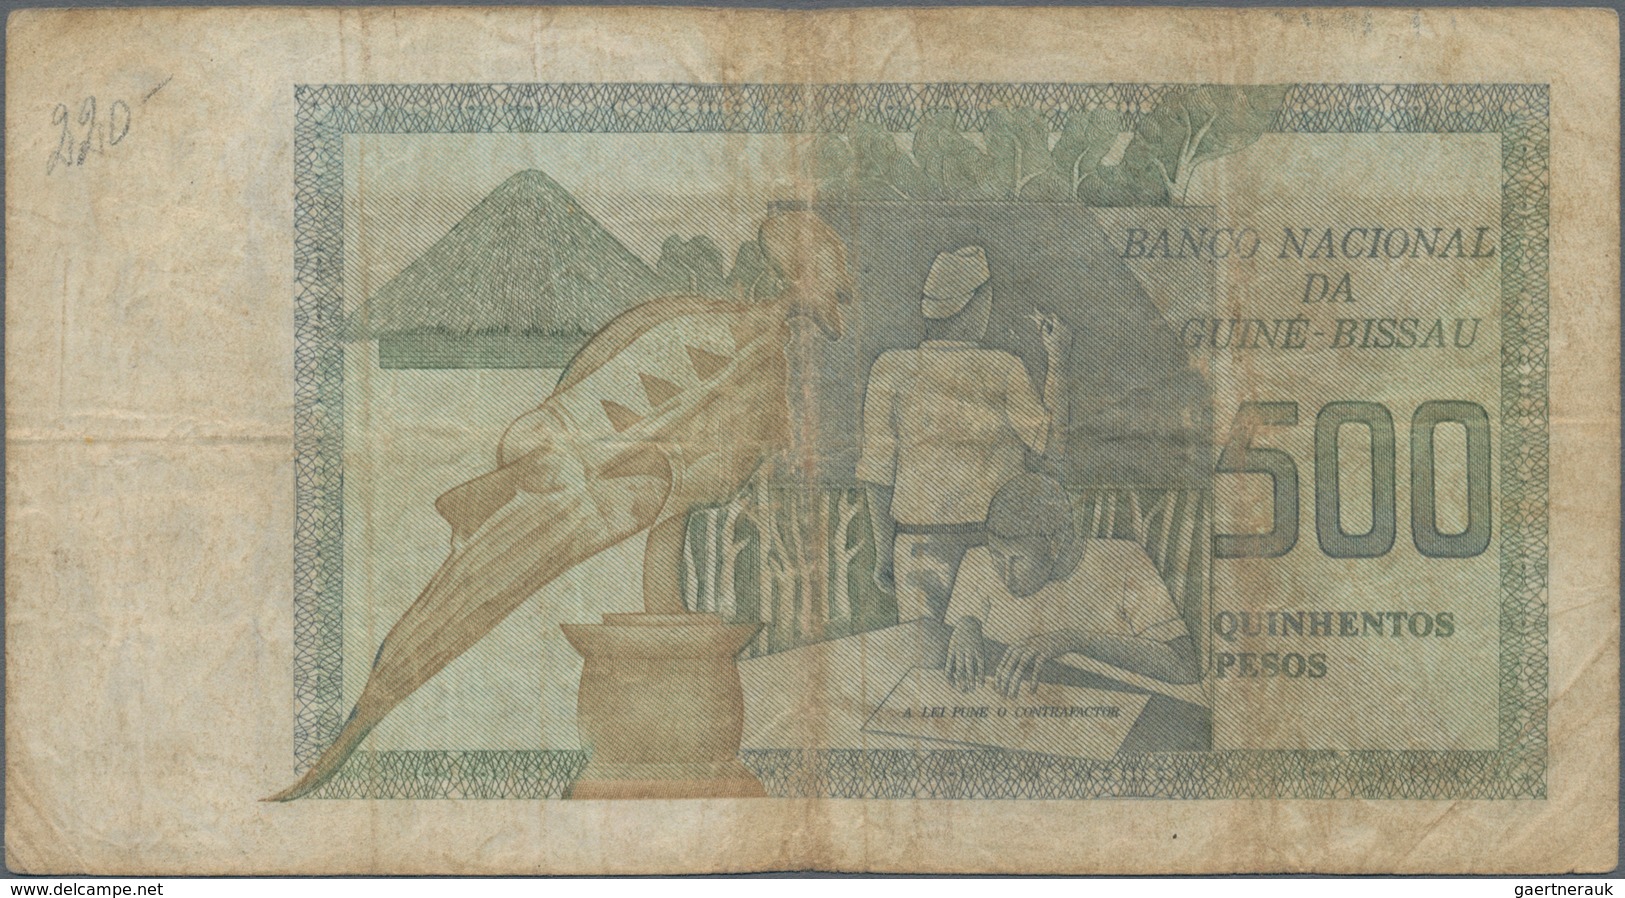 Guinea Bissau: Banco Nacional Da Guiné-Bissau 500 Pesos 1975, P.3, Toned Paper With Several Folds An - Guinee-Bissau